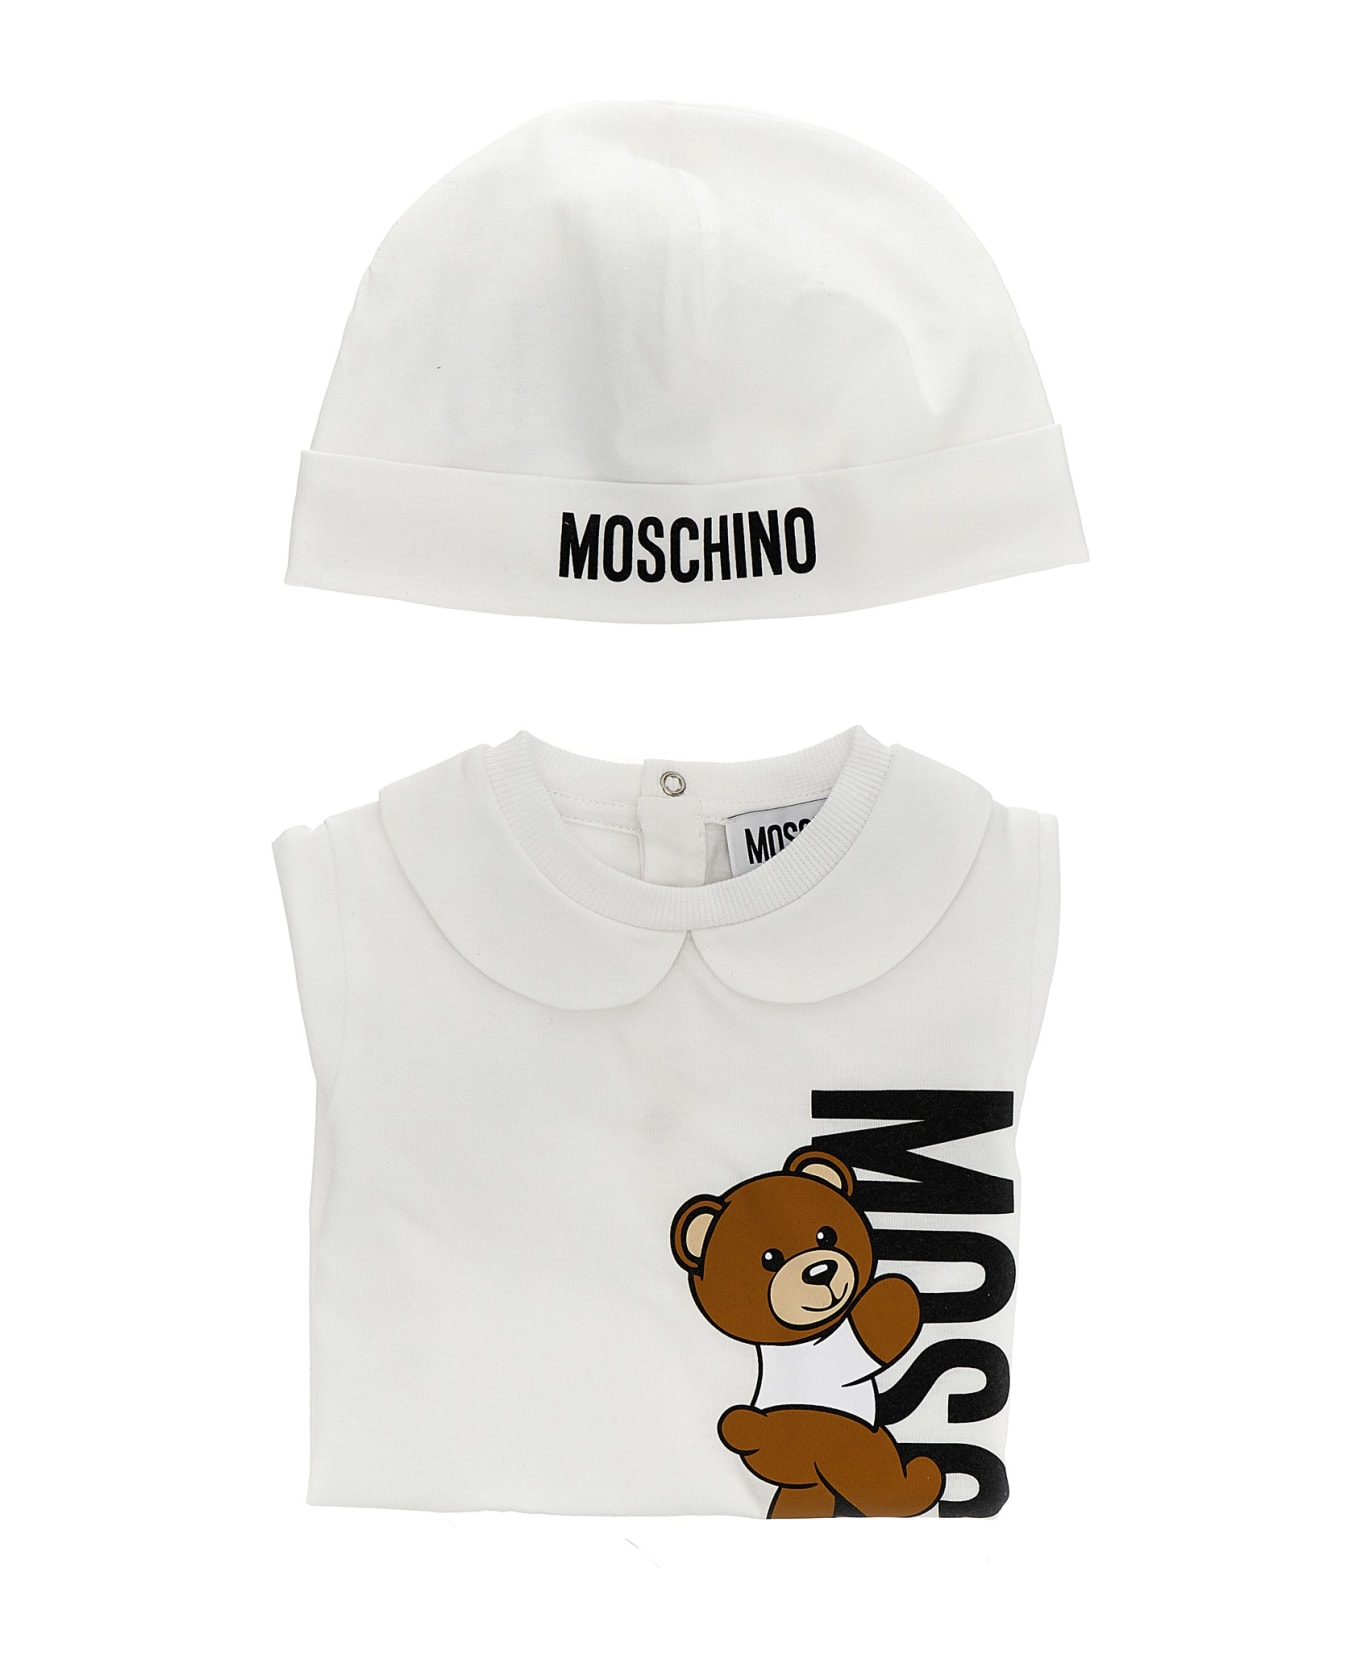 Moschino Bib + Cap - White